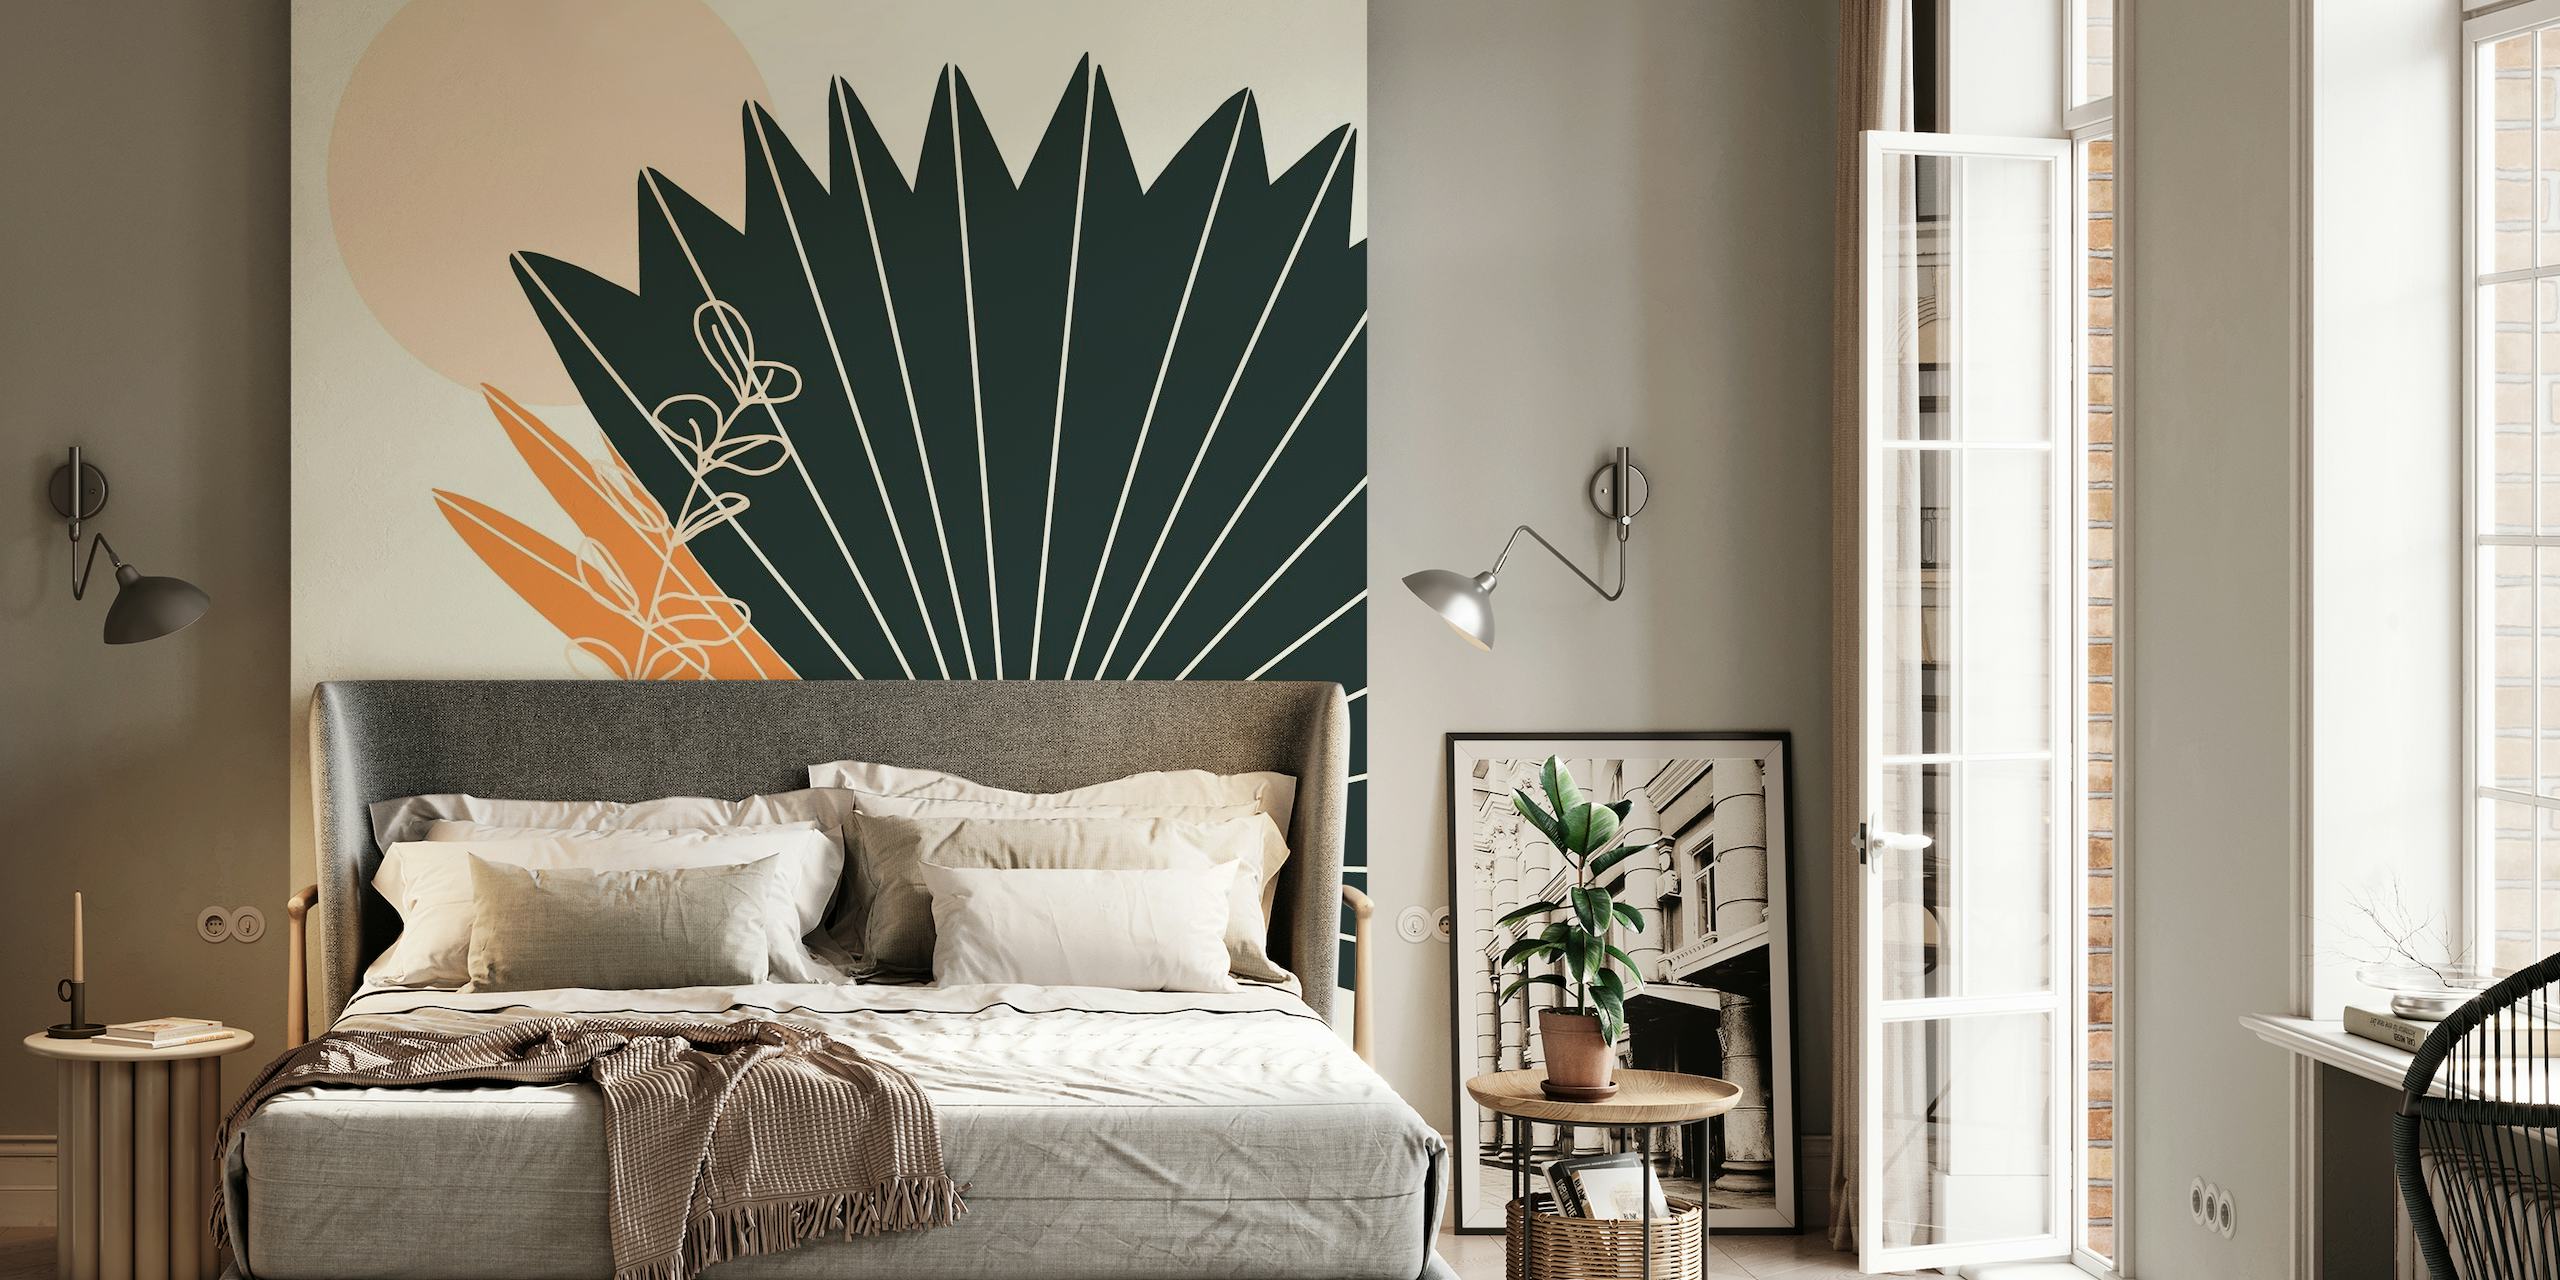 Abstrakt tapet med stiliserade palmblad och hantverksvas i jordnära toner